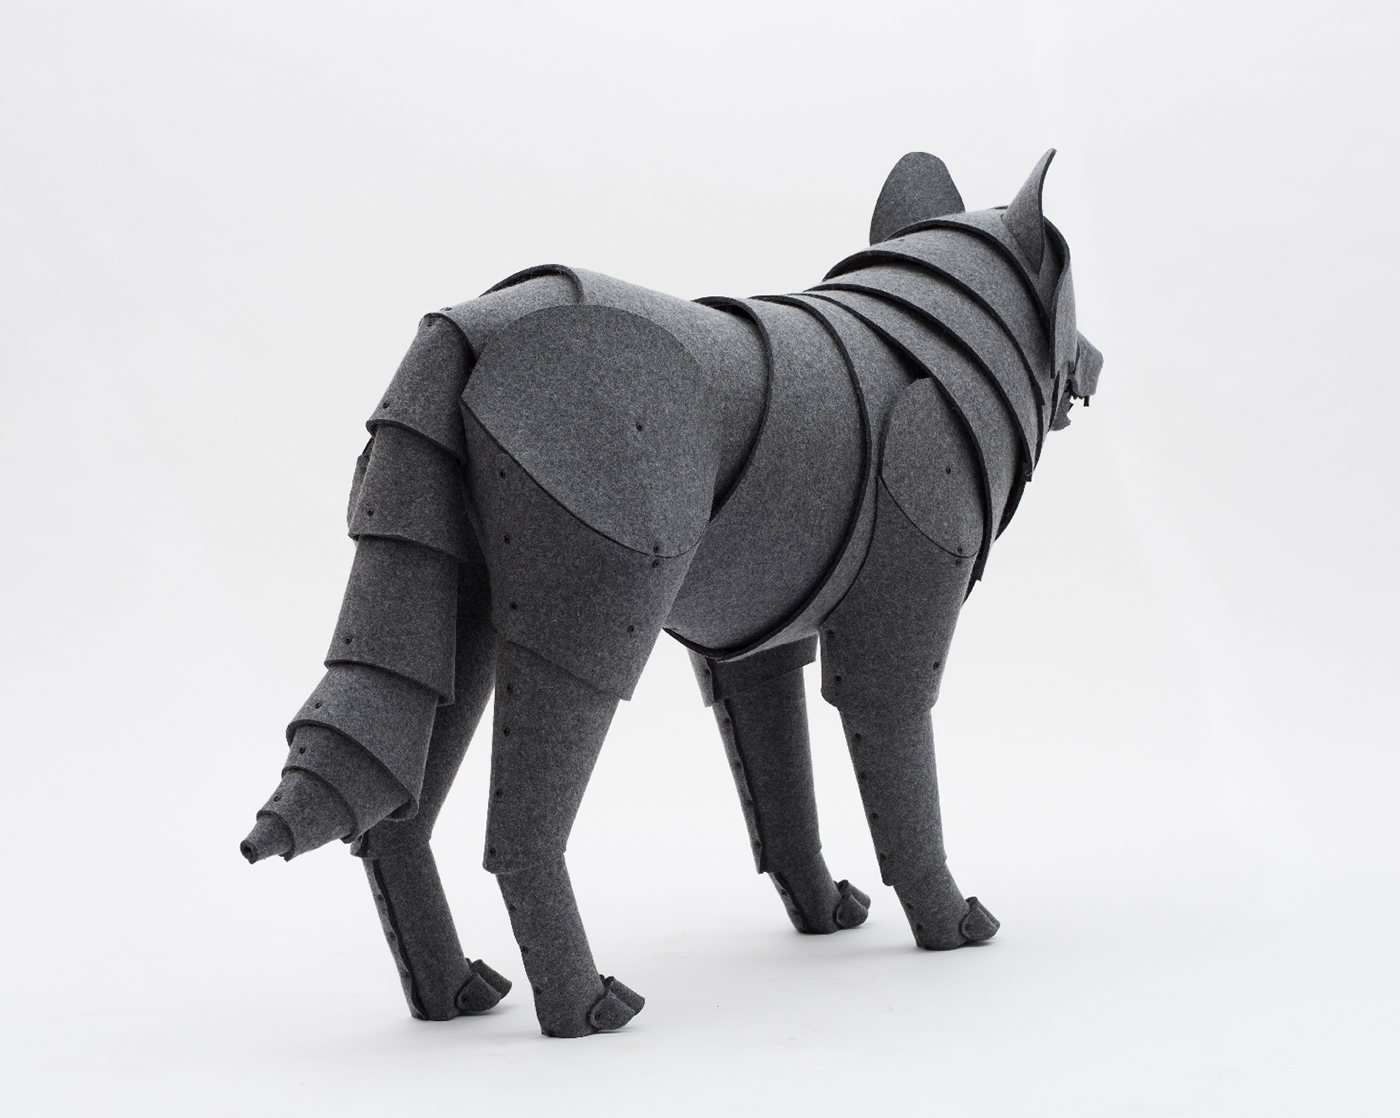 sculpture design object design wolf prop wool